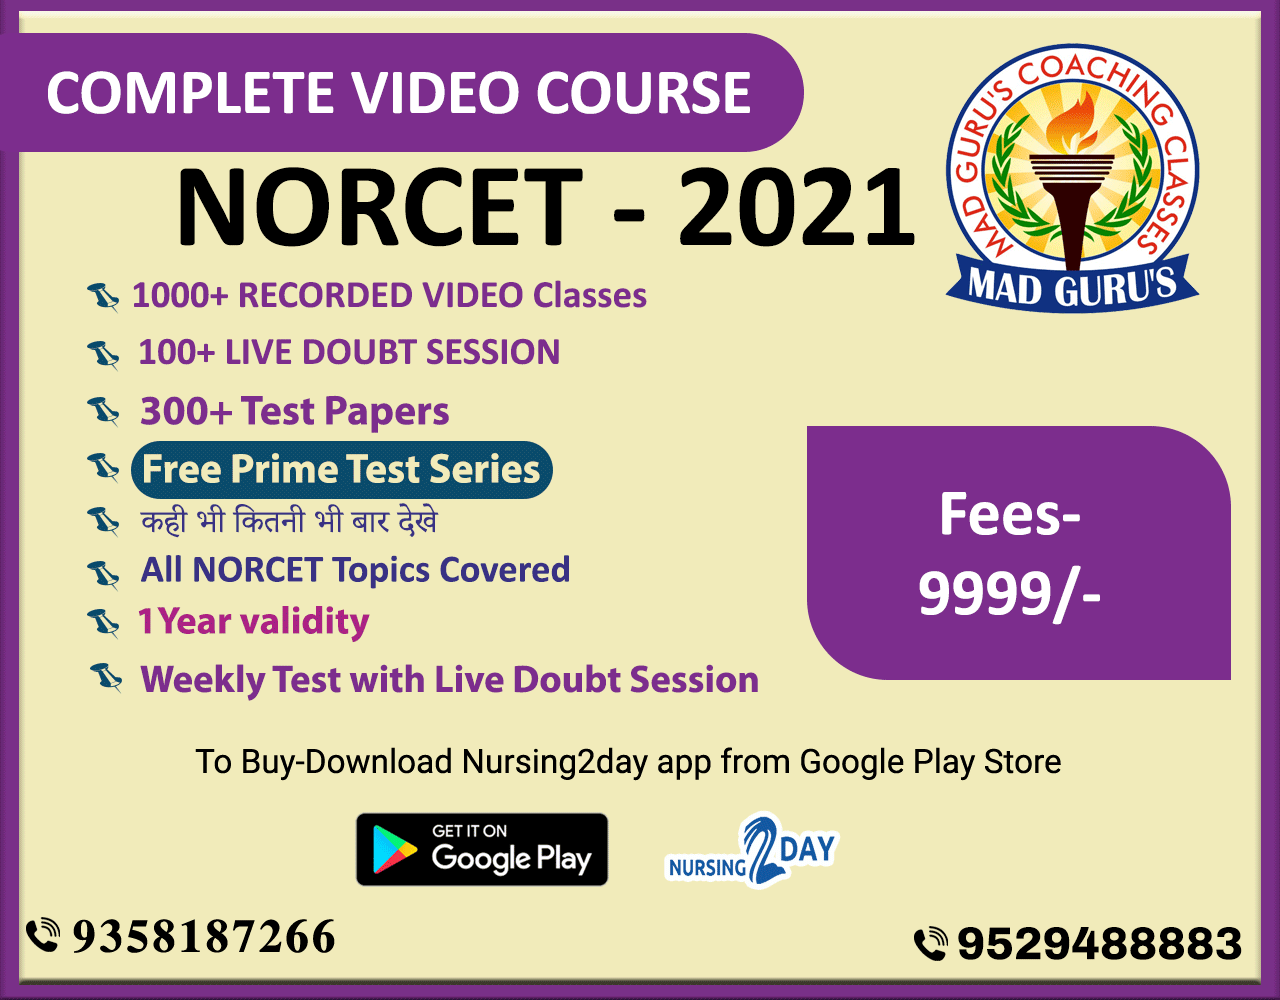 NORCET Course